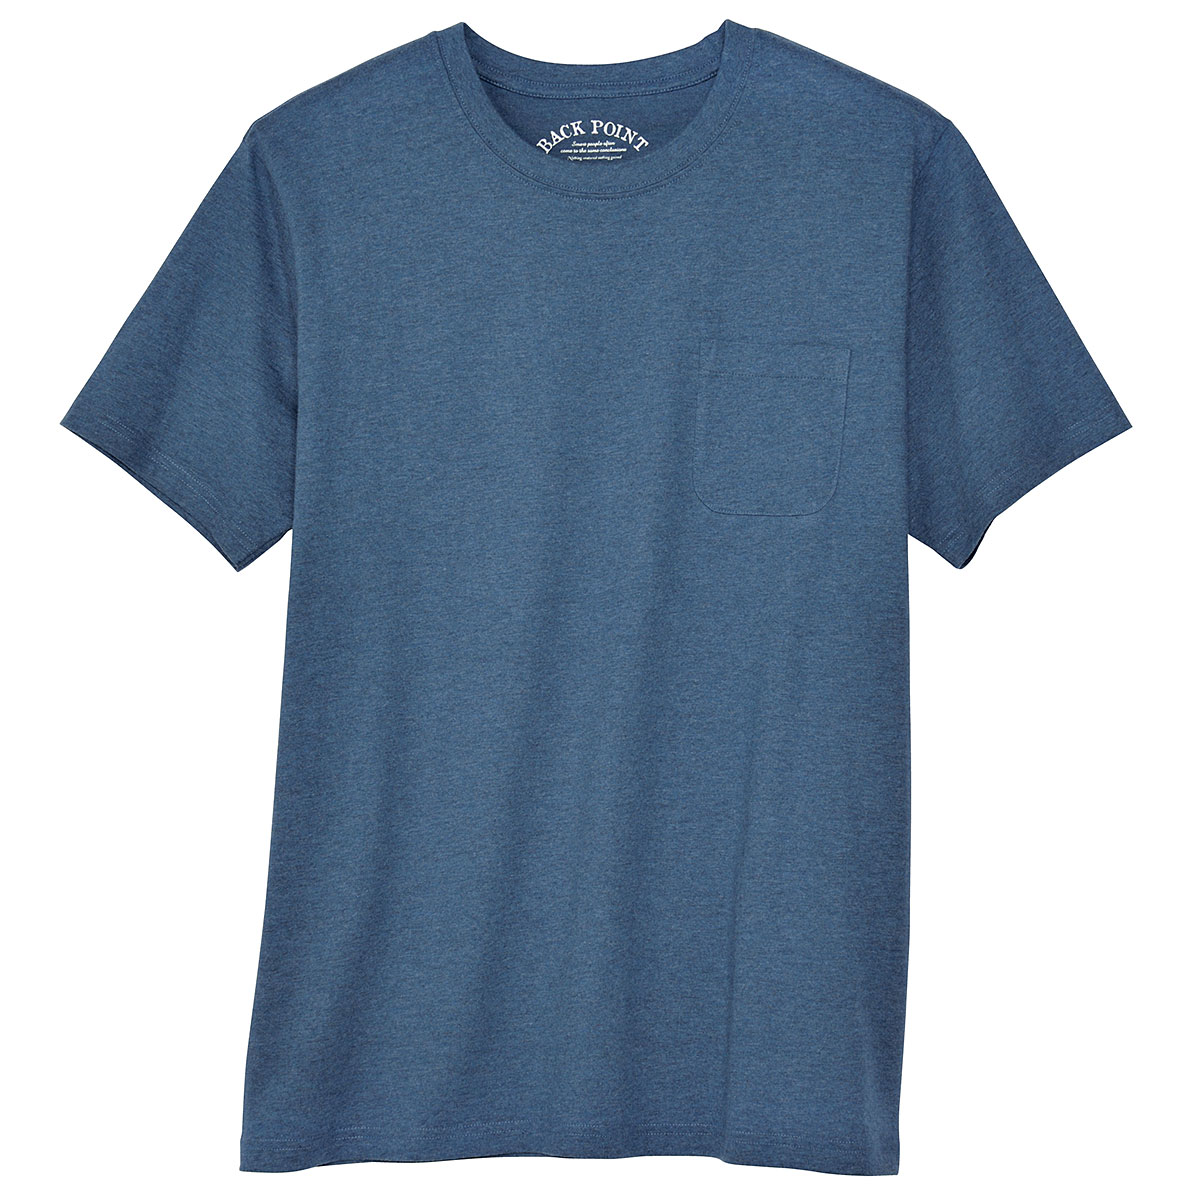 綿100%クルーネックTシャツ(半袖) - ファッション通販ならセシール(cecile)